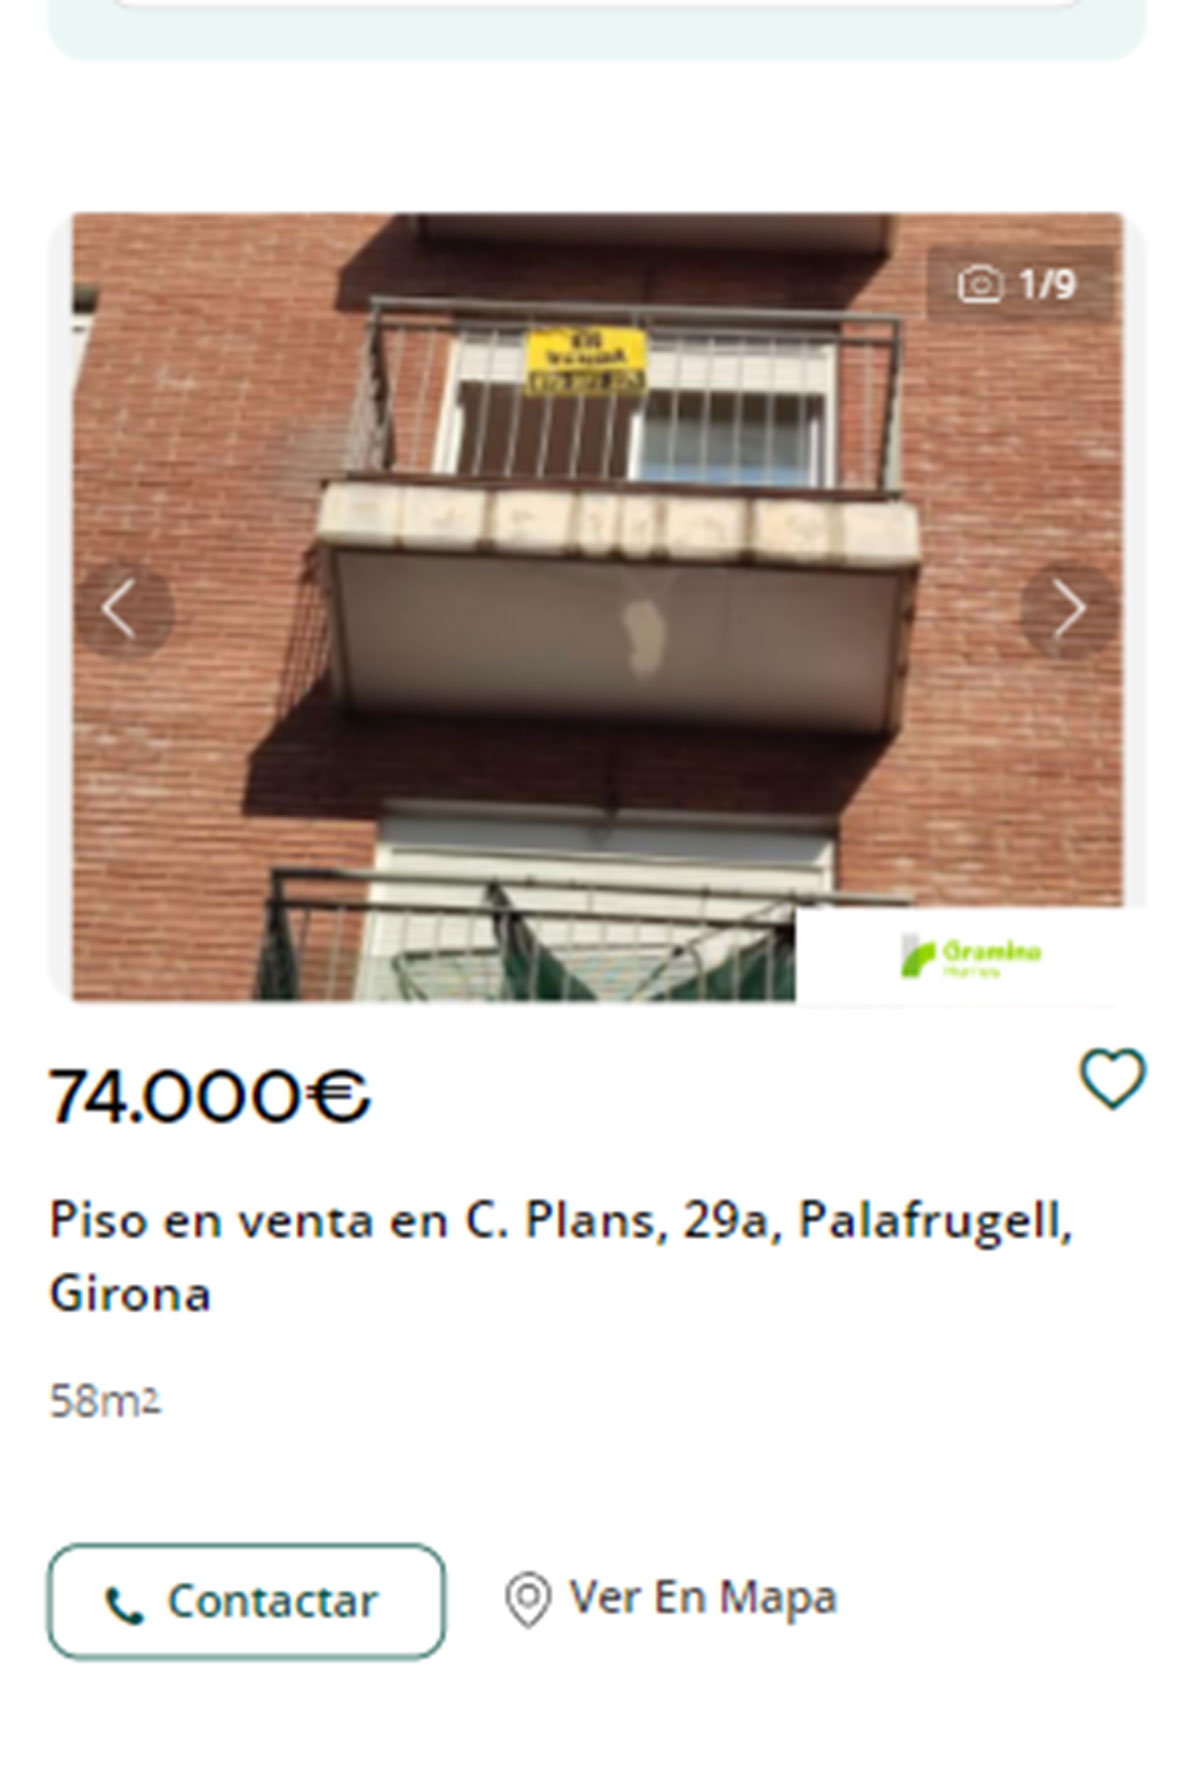 Piso en Girona por 74.000 euros